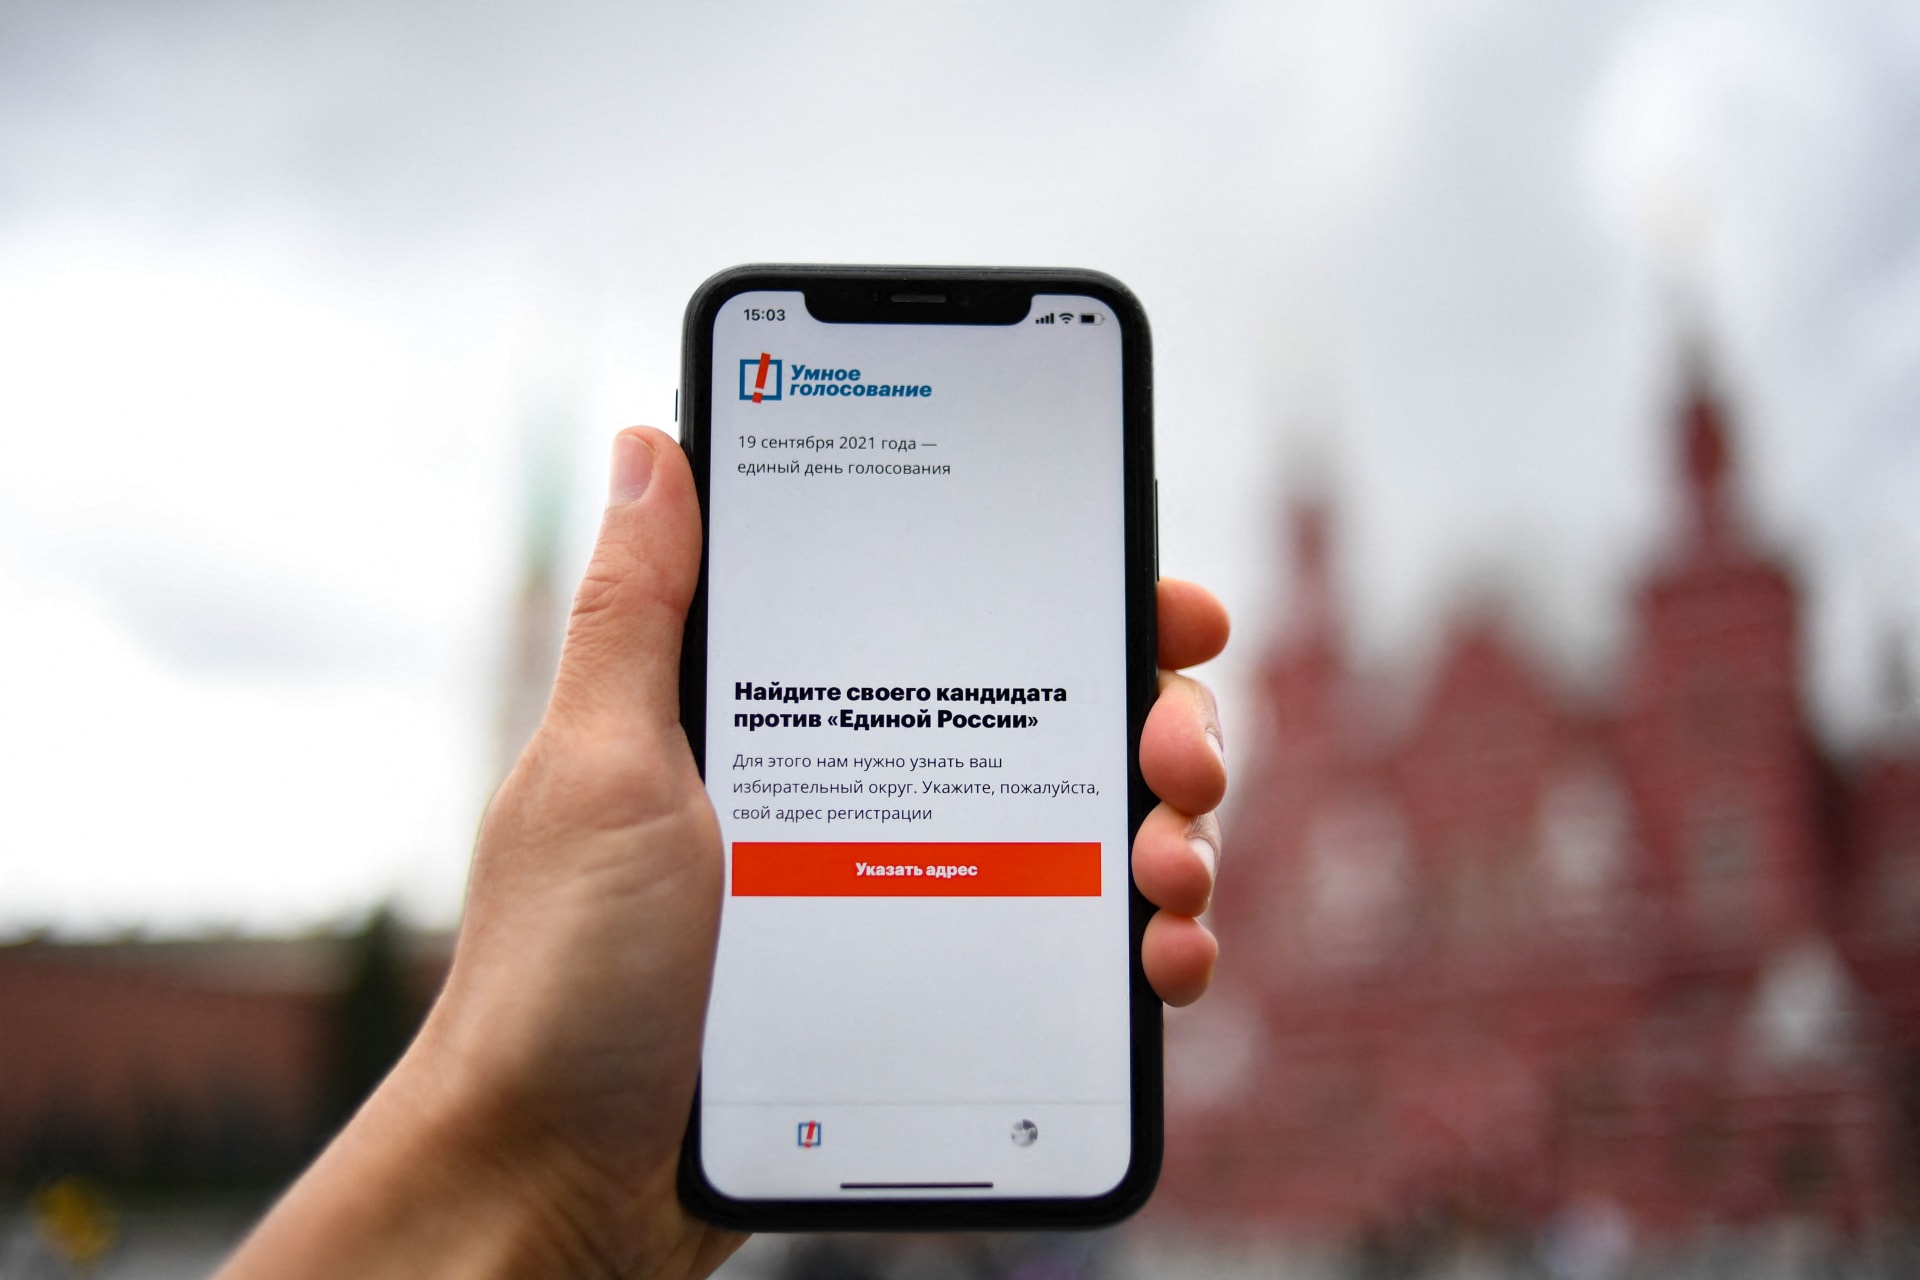 صورة توضيحية لشاشة هاتف ذكي تعرض تطبيق "التصويت الذكي"  لناقد الكرملين المسجون أليكسي - موسكو في 16 سبتمبر 2021.